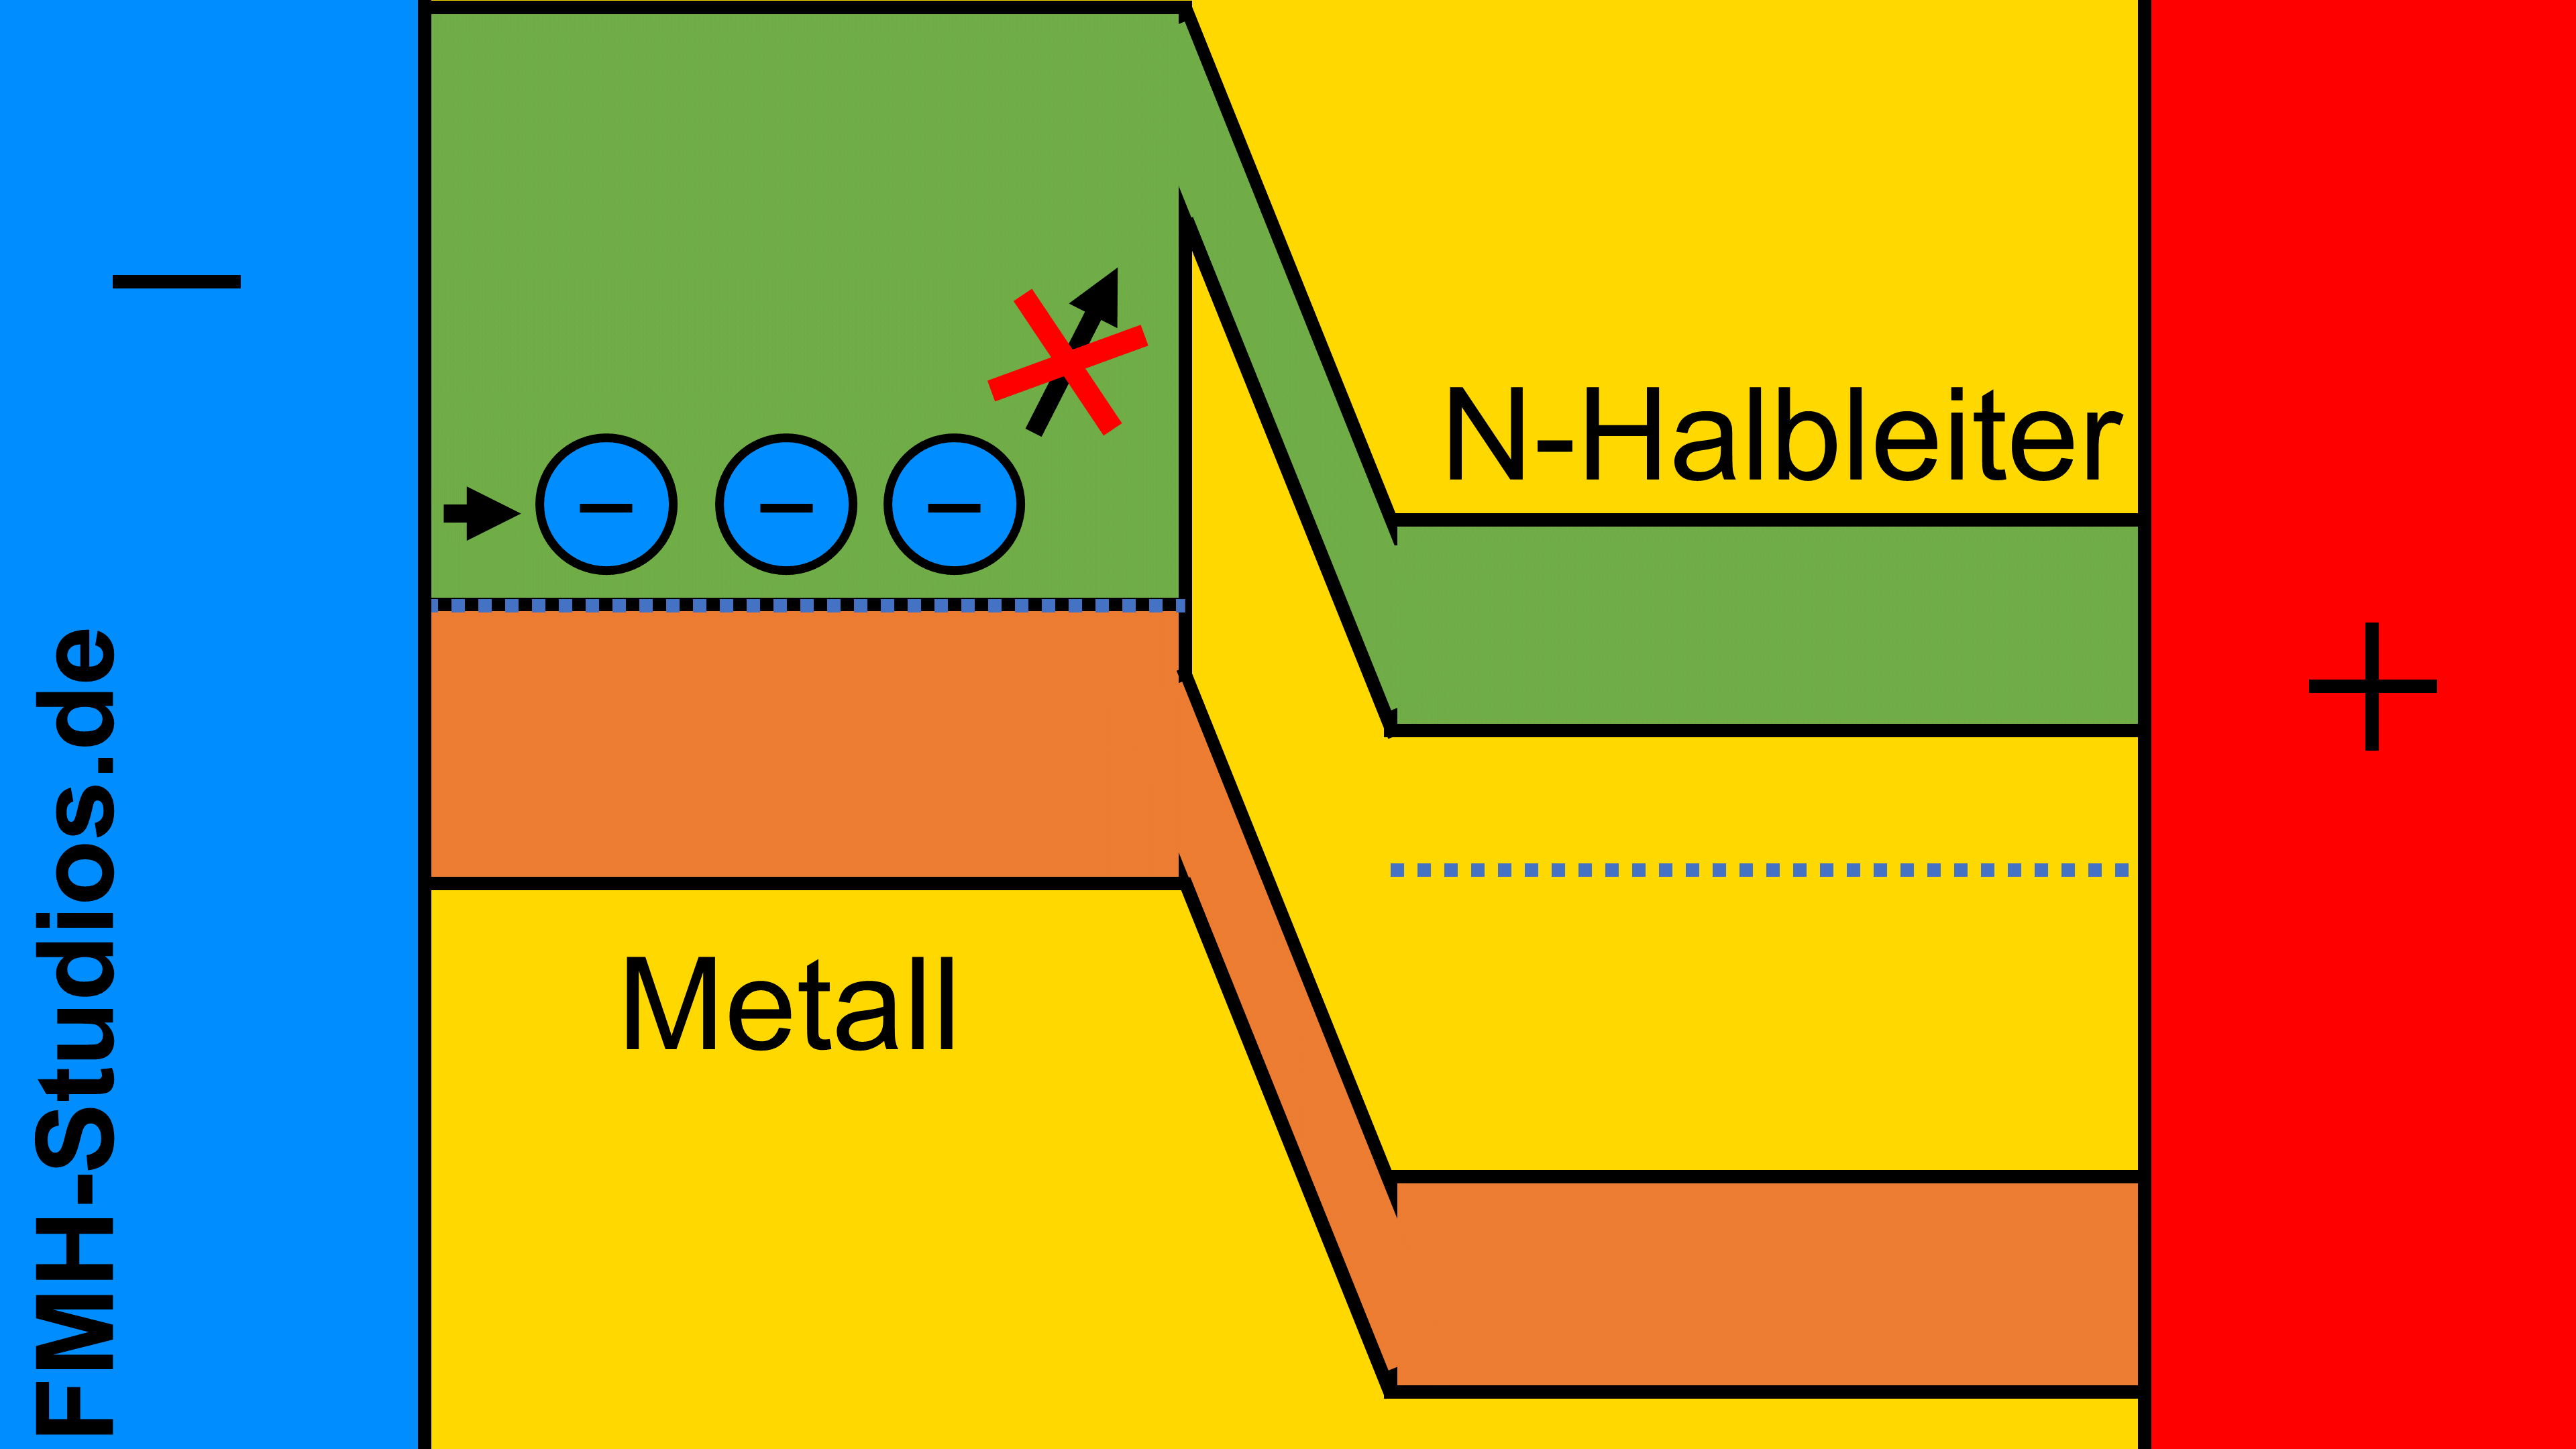 Diode - Halbleiter - PN-Übergang - Schottky-Diode - Schottky-Kontakt - Schottky - Sperrrichtung - n dotiert - N-Halbleiter - Bändermodell 